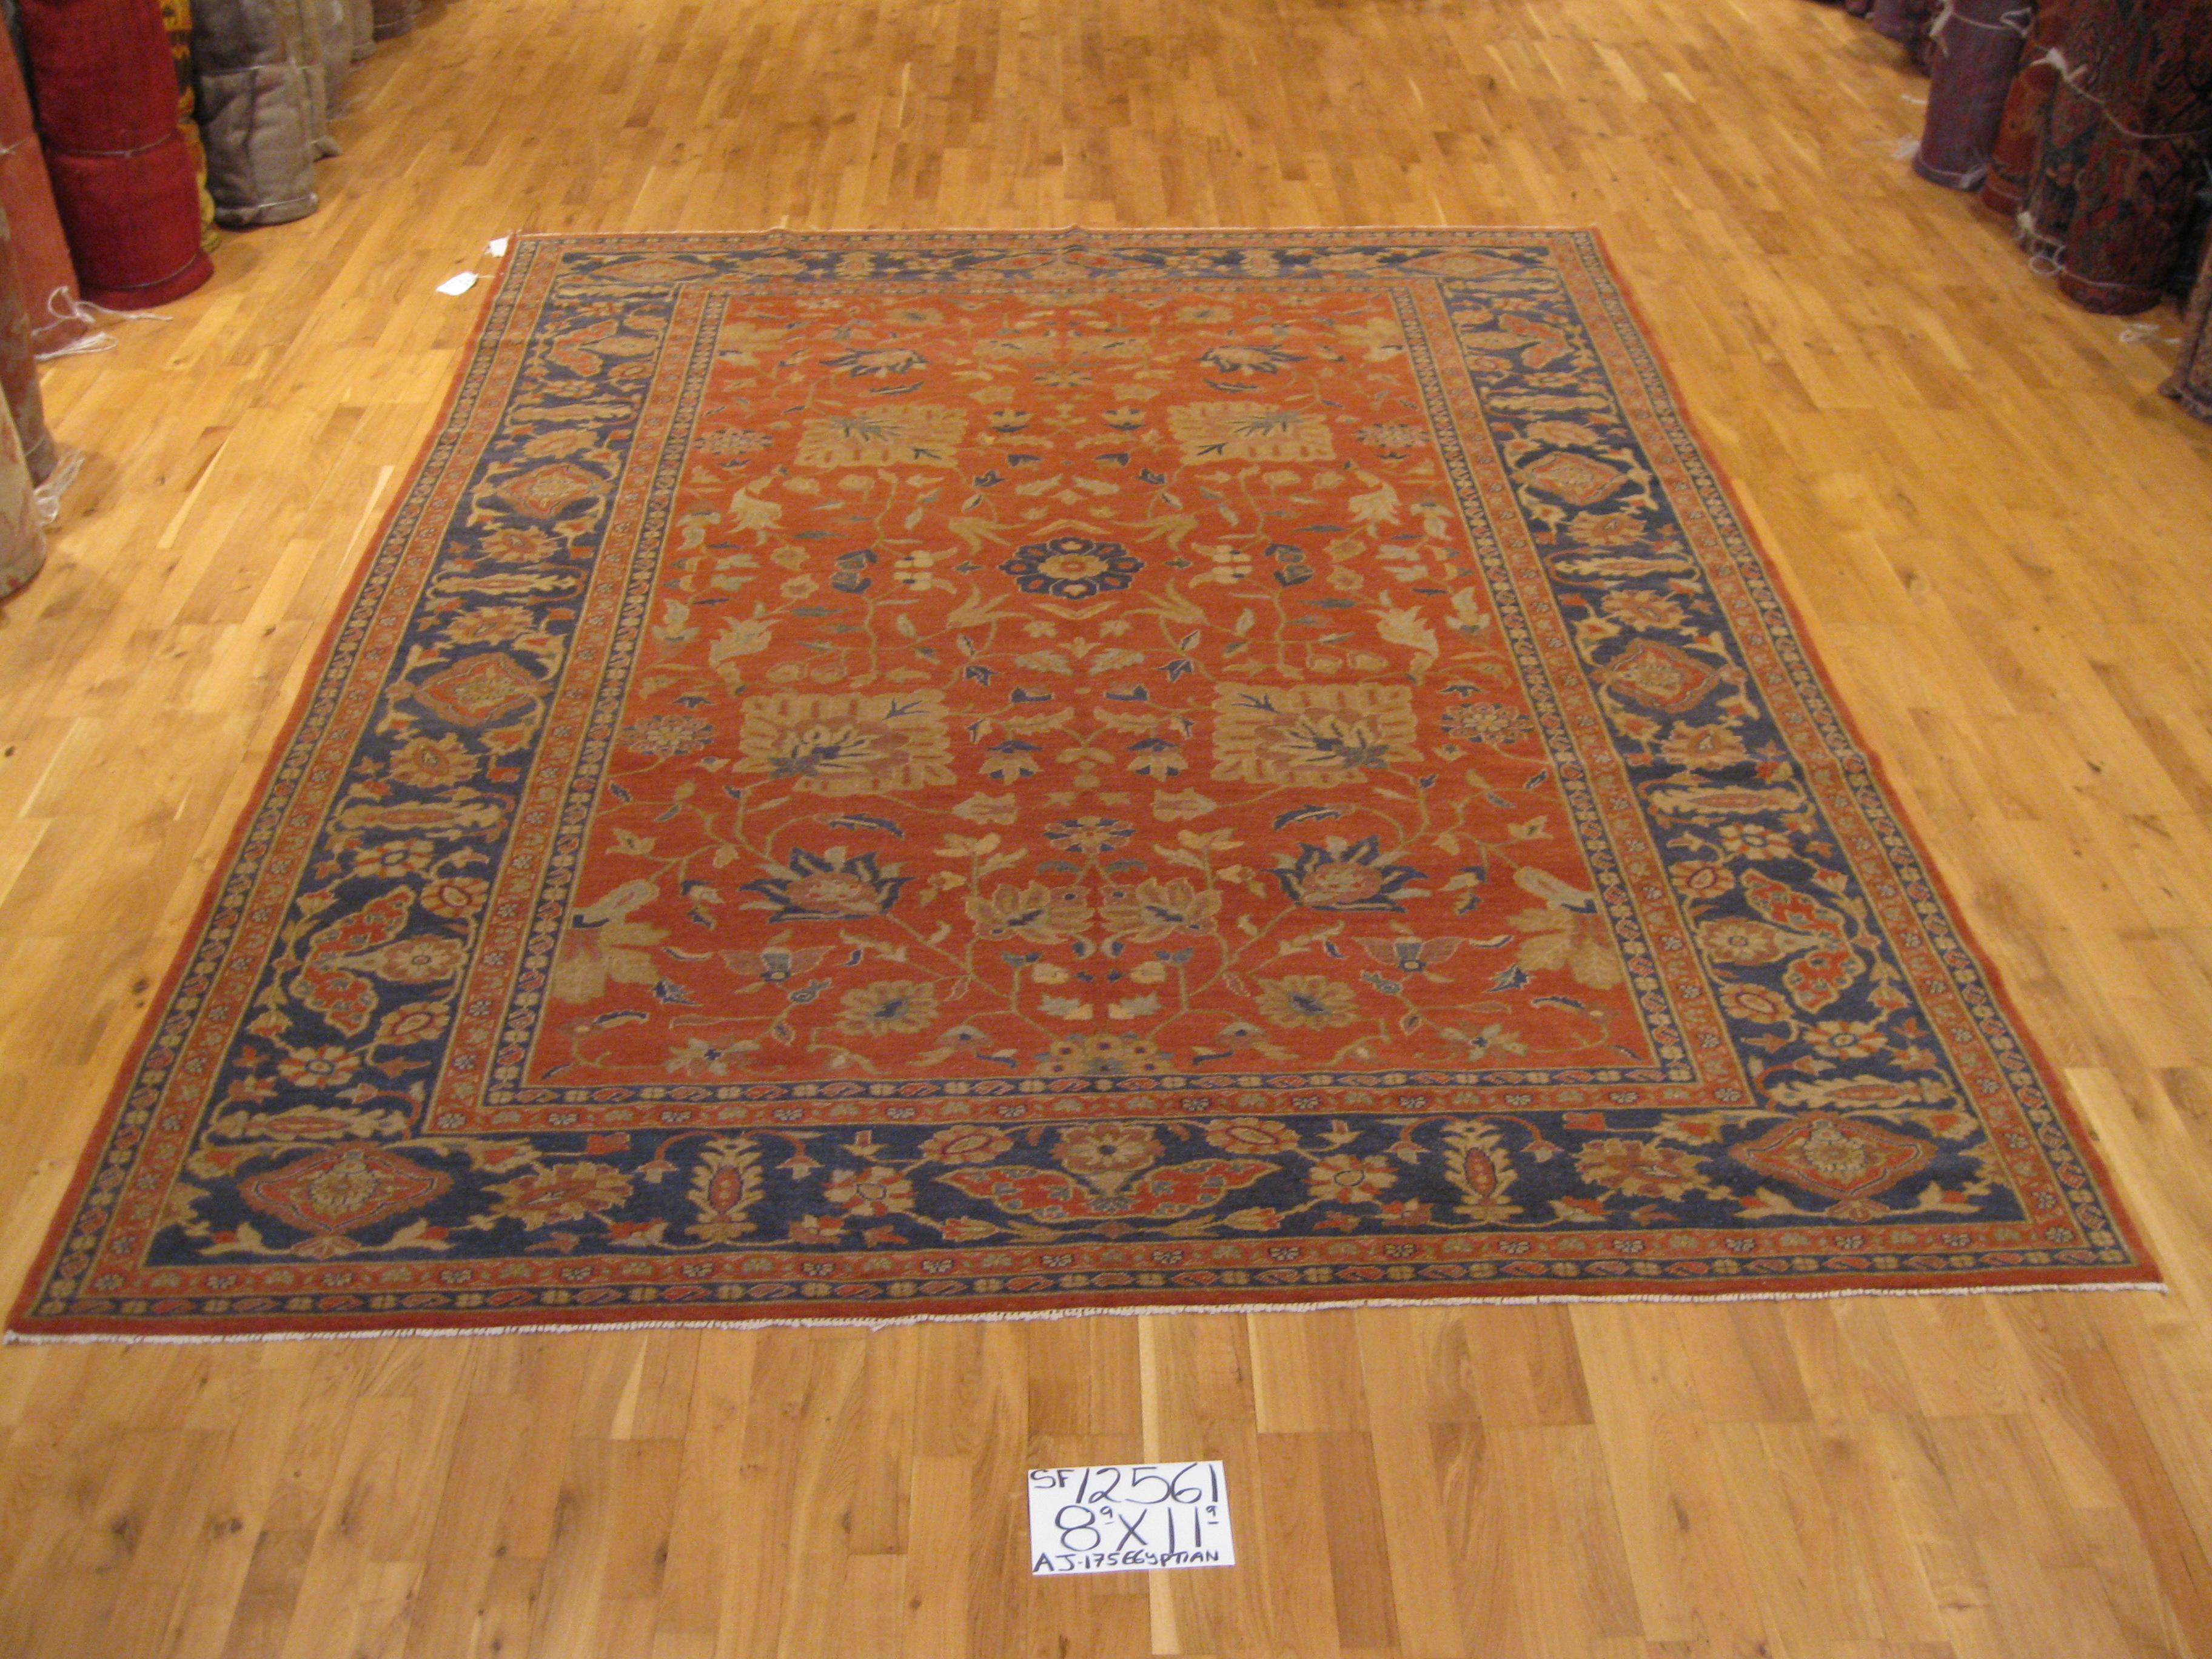 Obwohl die ägyptischen Teppiche nicht so bekannt sind wie die türkischen und persischen, haben sie doch eine jahrhundertealte Tradition in der Teppichherstellung. Dieser elegante Teppich im traditionellen Stil mit seinen kräftigen blauen und roten